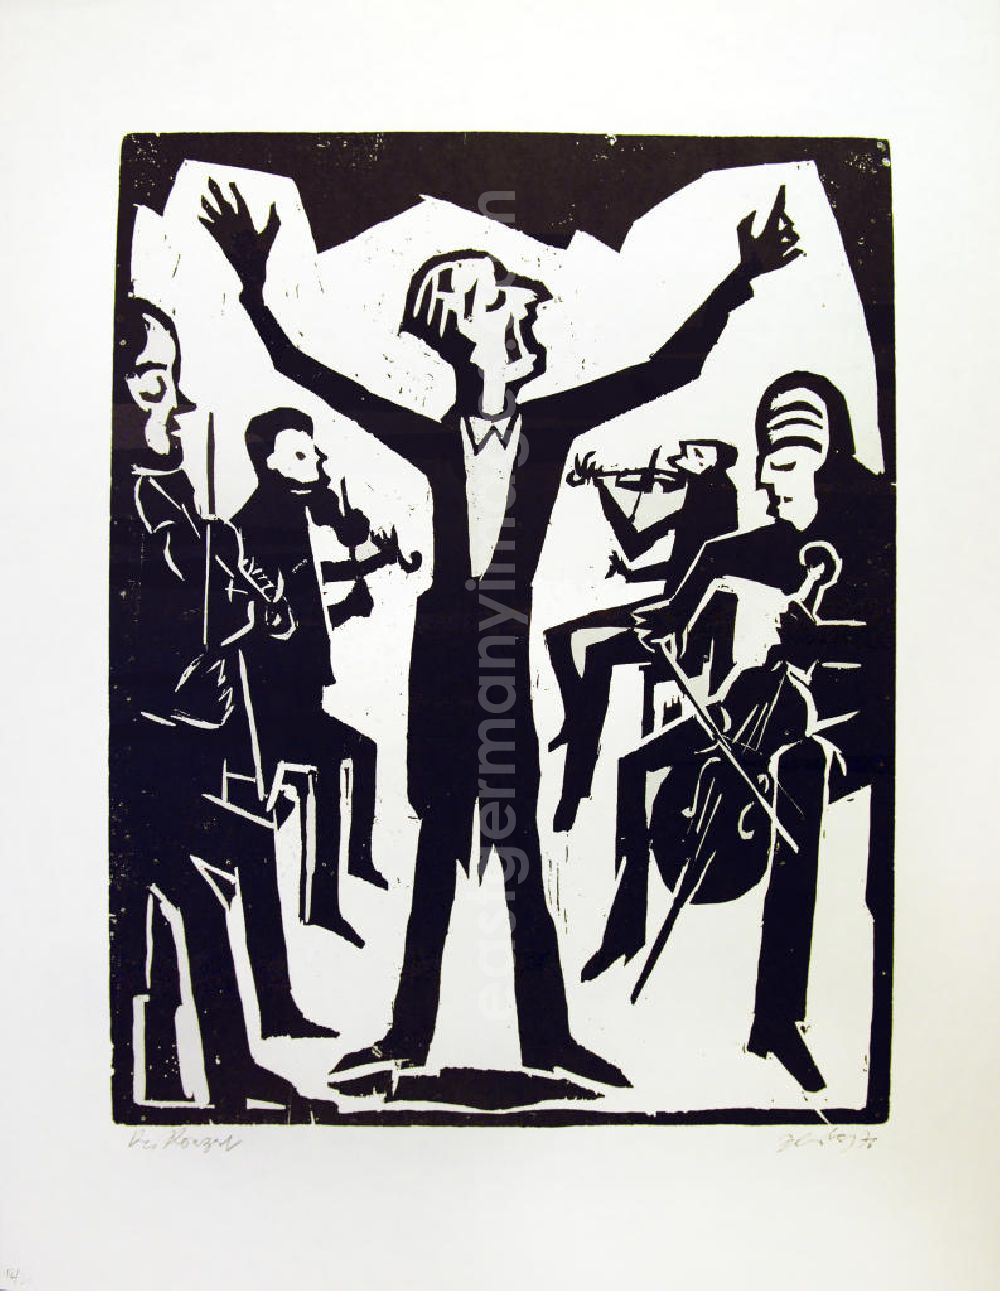 Berlin: Grafik von Herbert Sandberg Das Konzert/Der Sänger aus dem Jahr 1976, 36,0x47,7cm Holzschnitt, handsigniert, 12/3